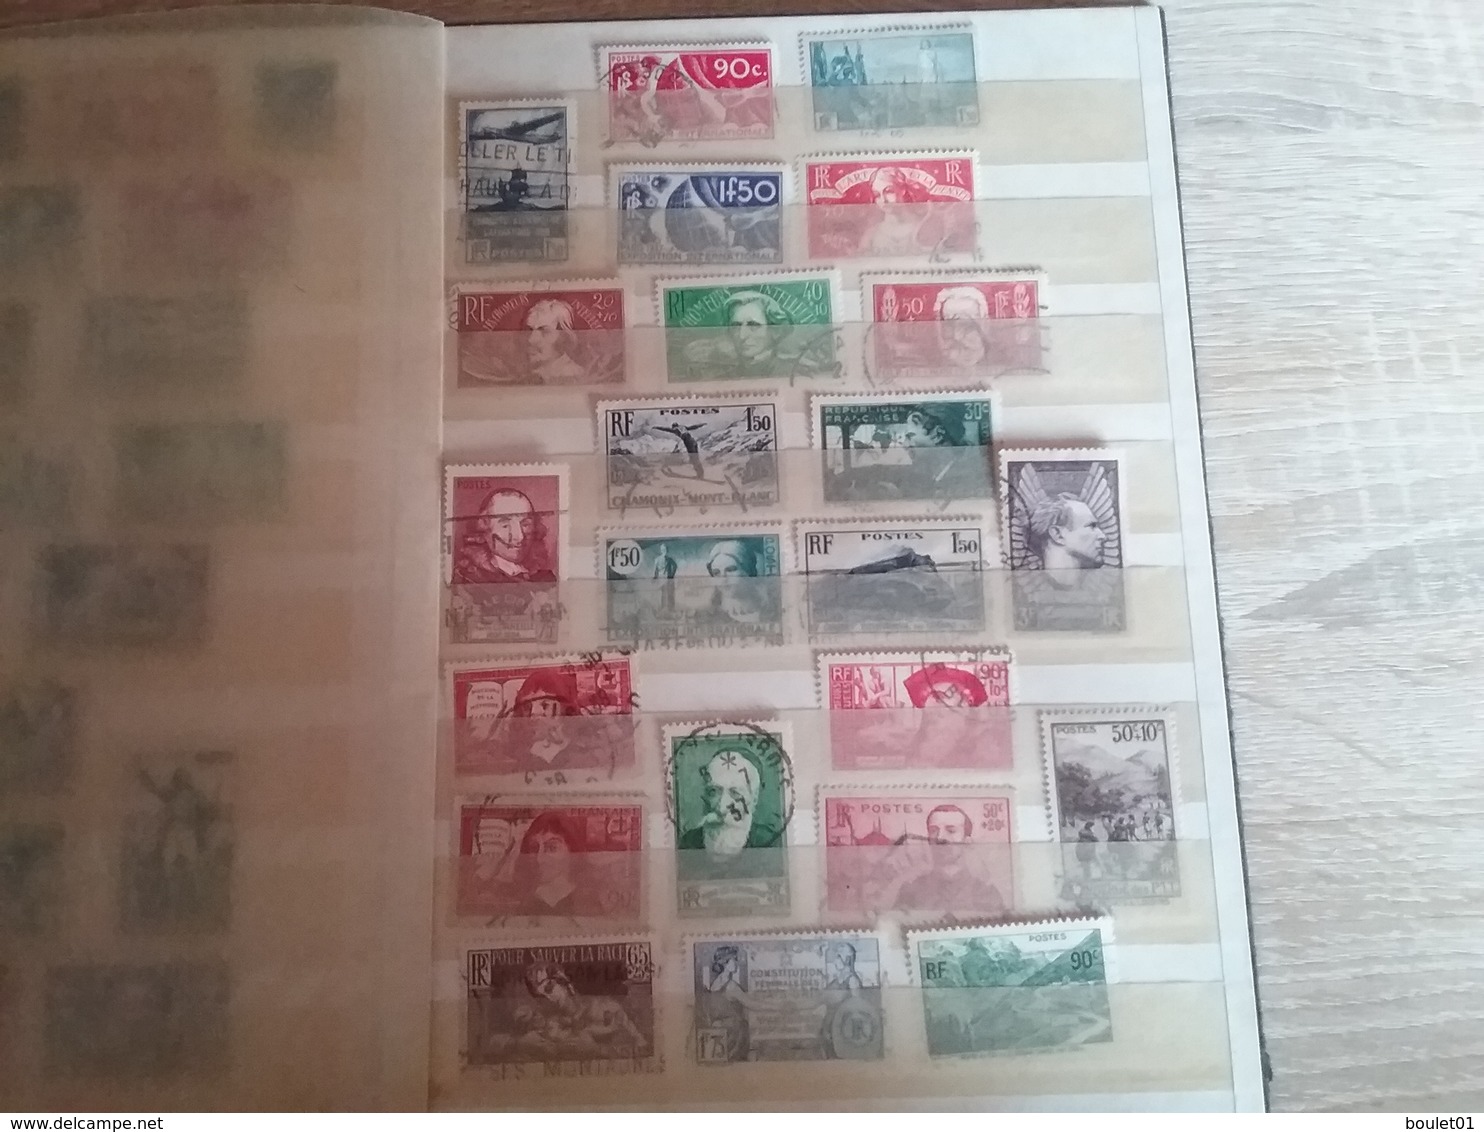 1album de timbres de France oblitèrrés de 1860 à 1958 départ à 1 euro (forte cote)